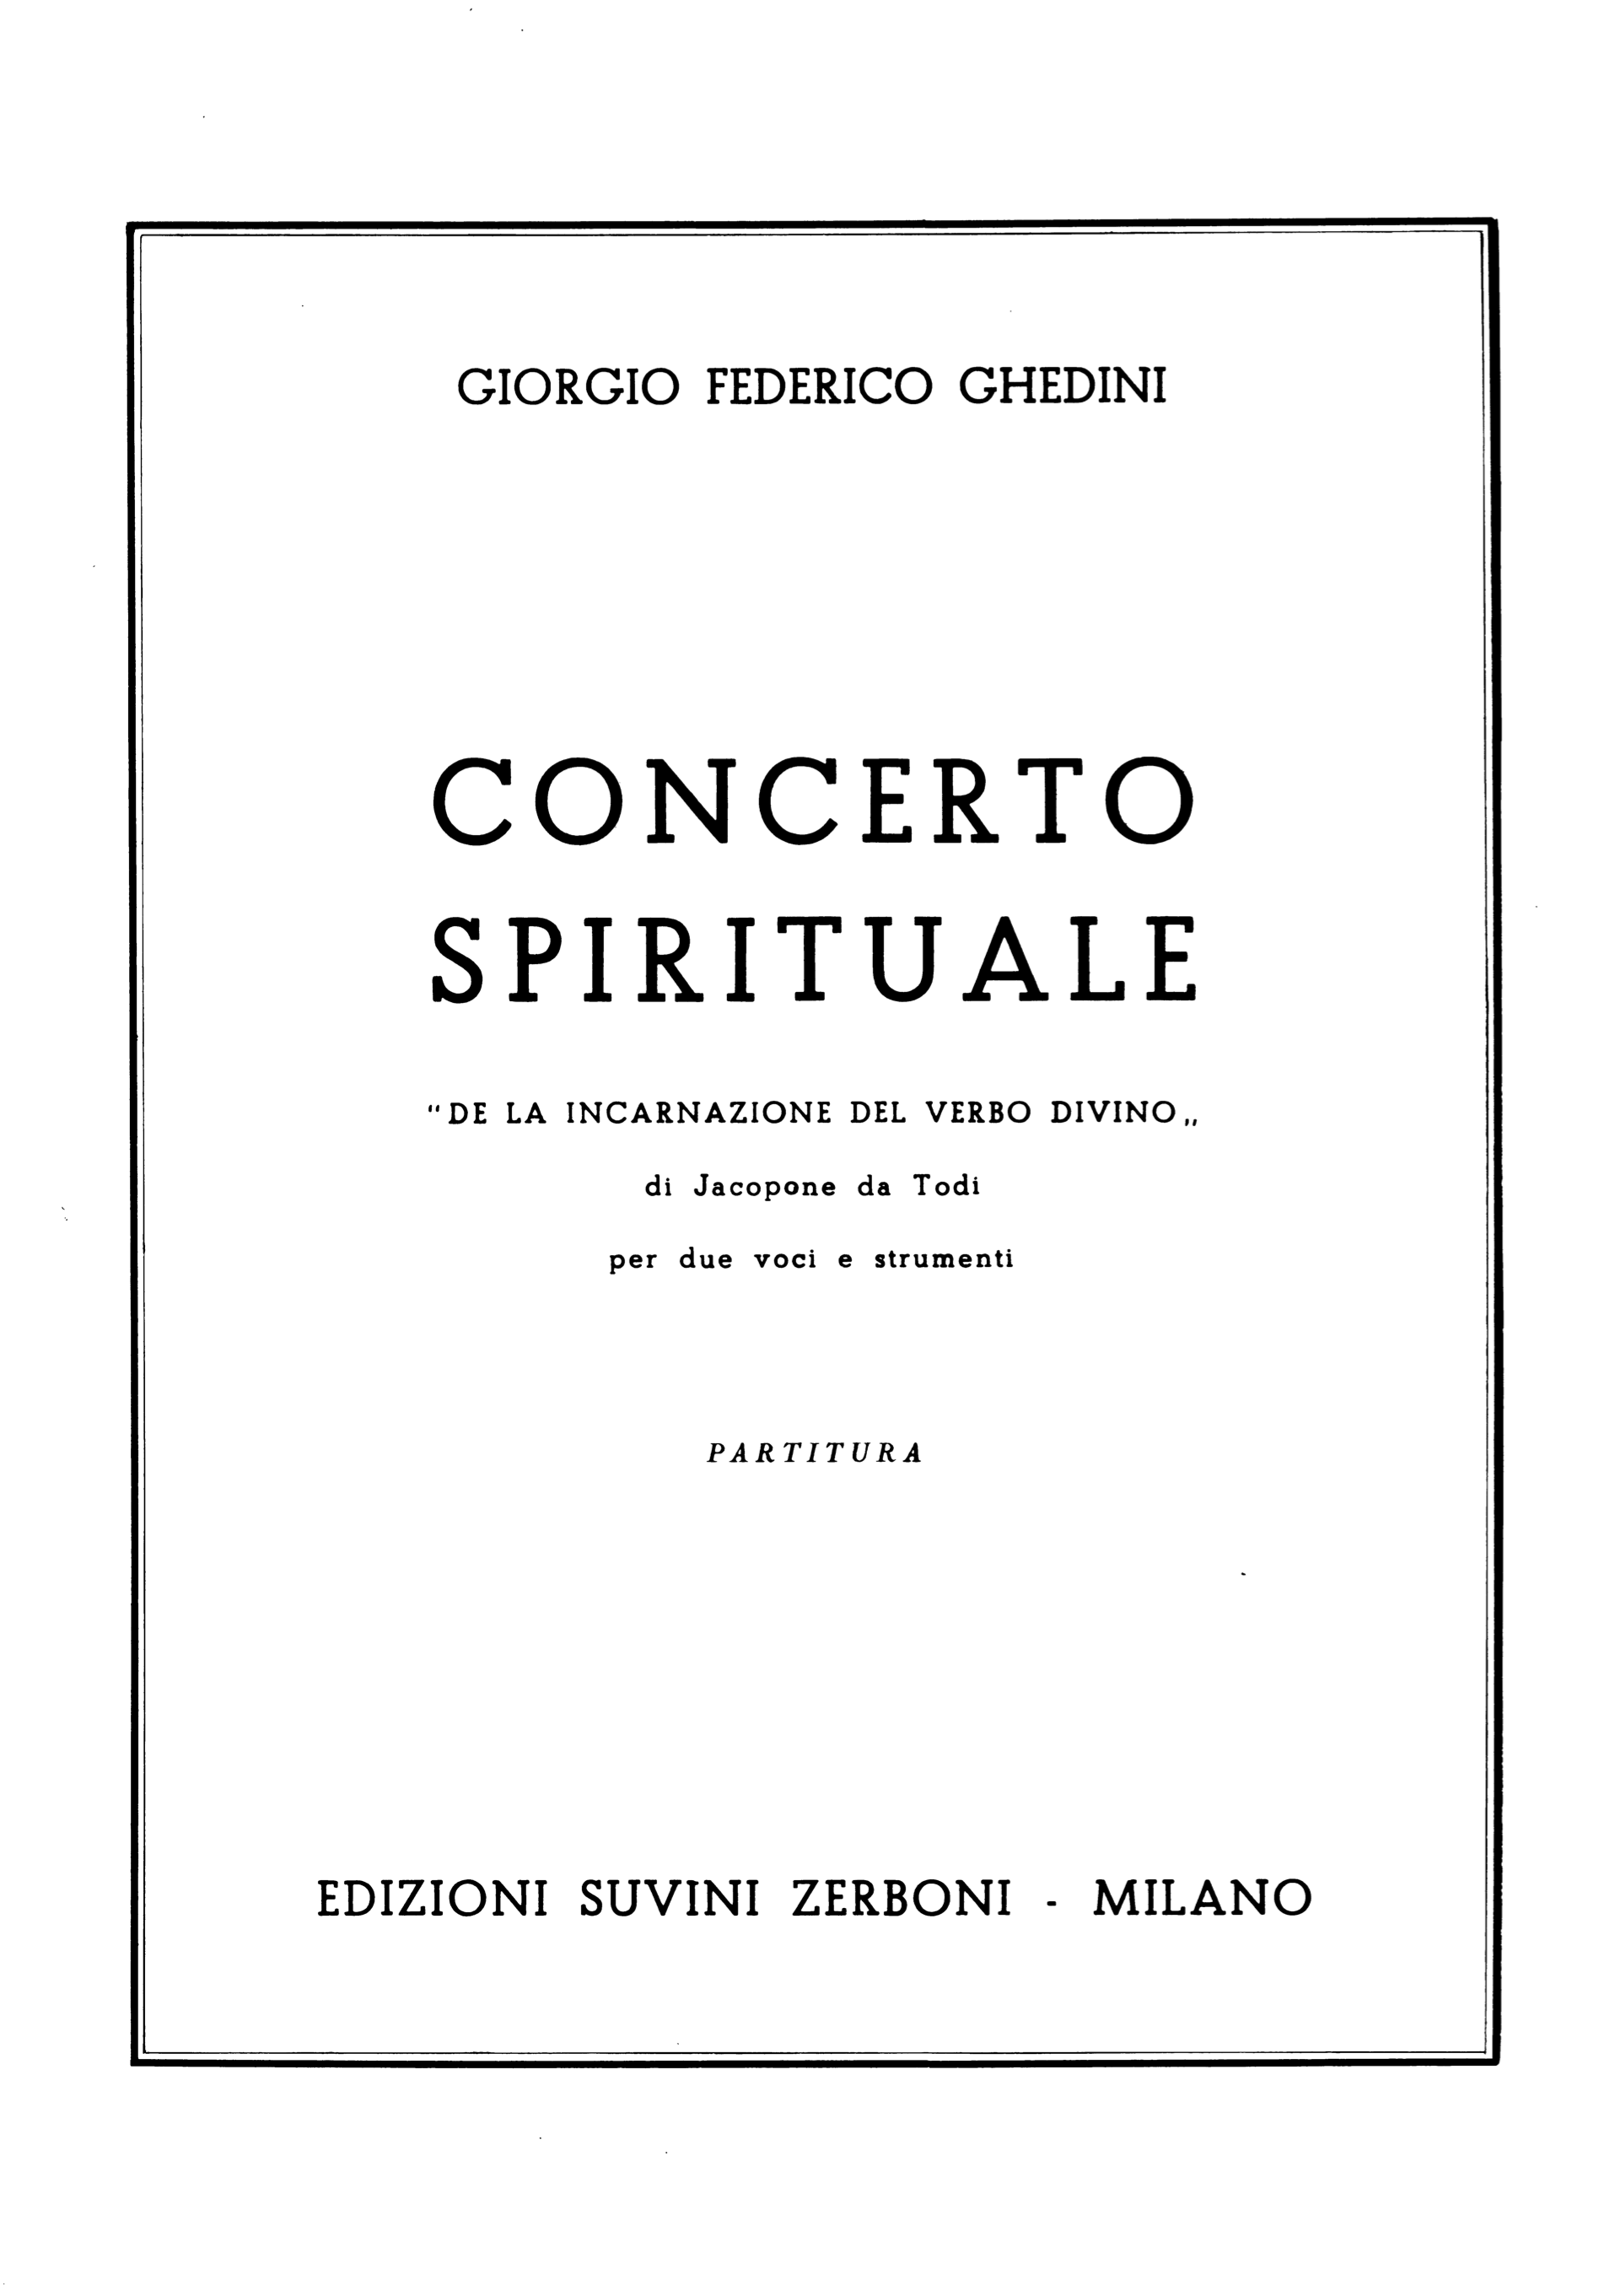 Concerto spirituale_Ghedini 1